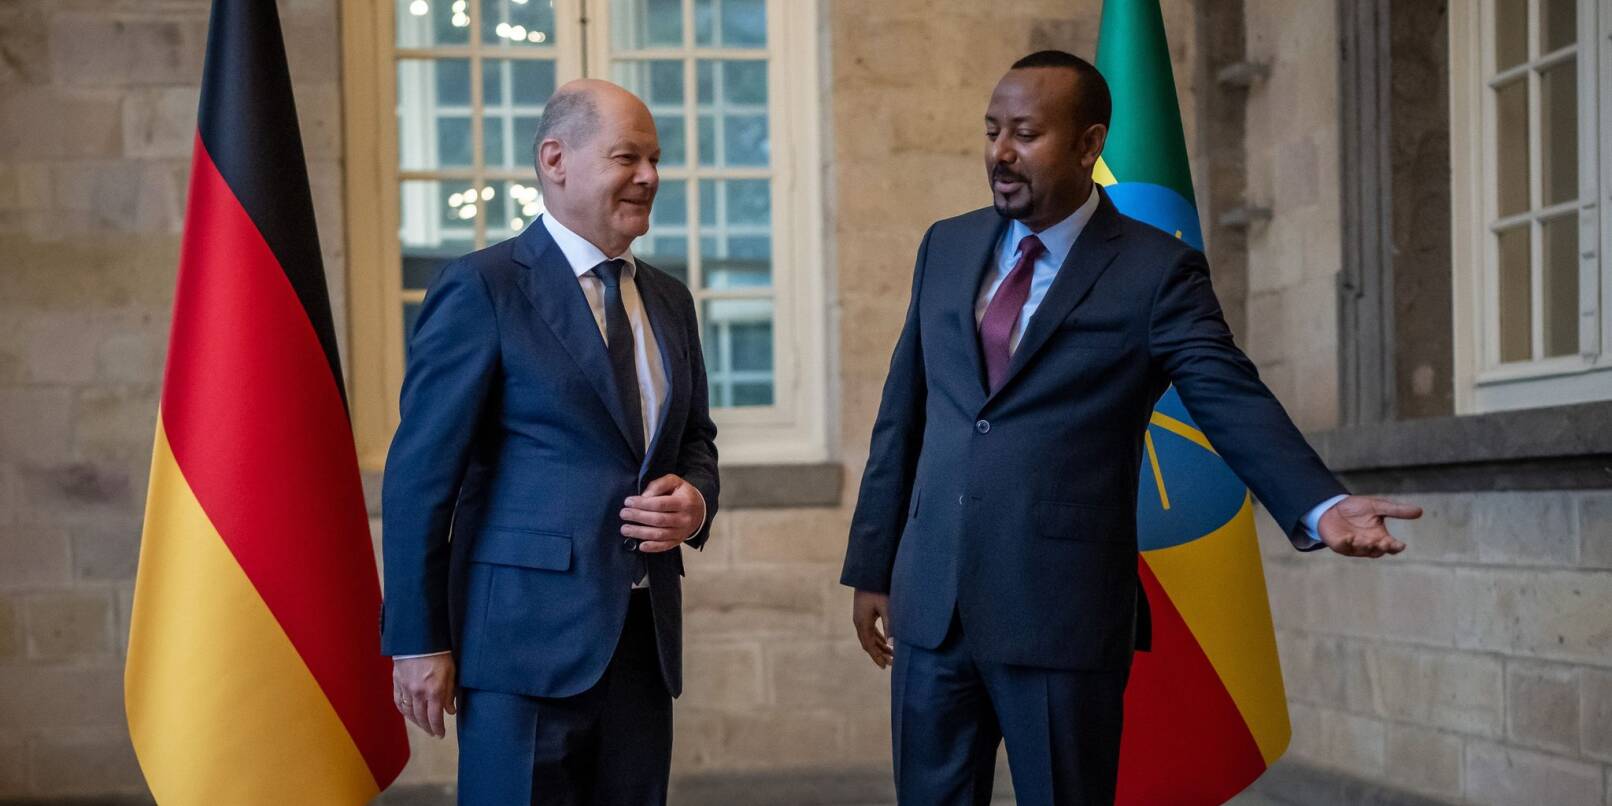 Bundeskanzler Olaf Scholz wird von dem äthiopischen Ministerpräsidenten Abiy Ahmed begrüßt.